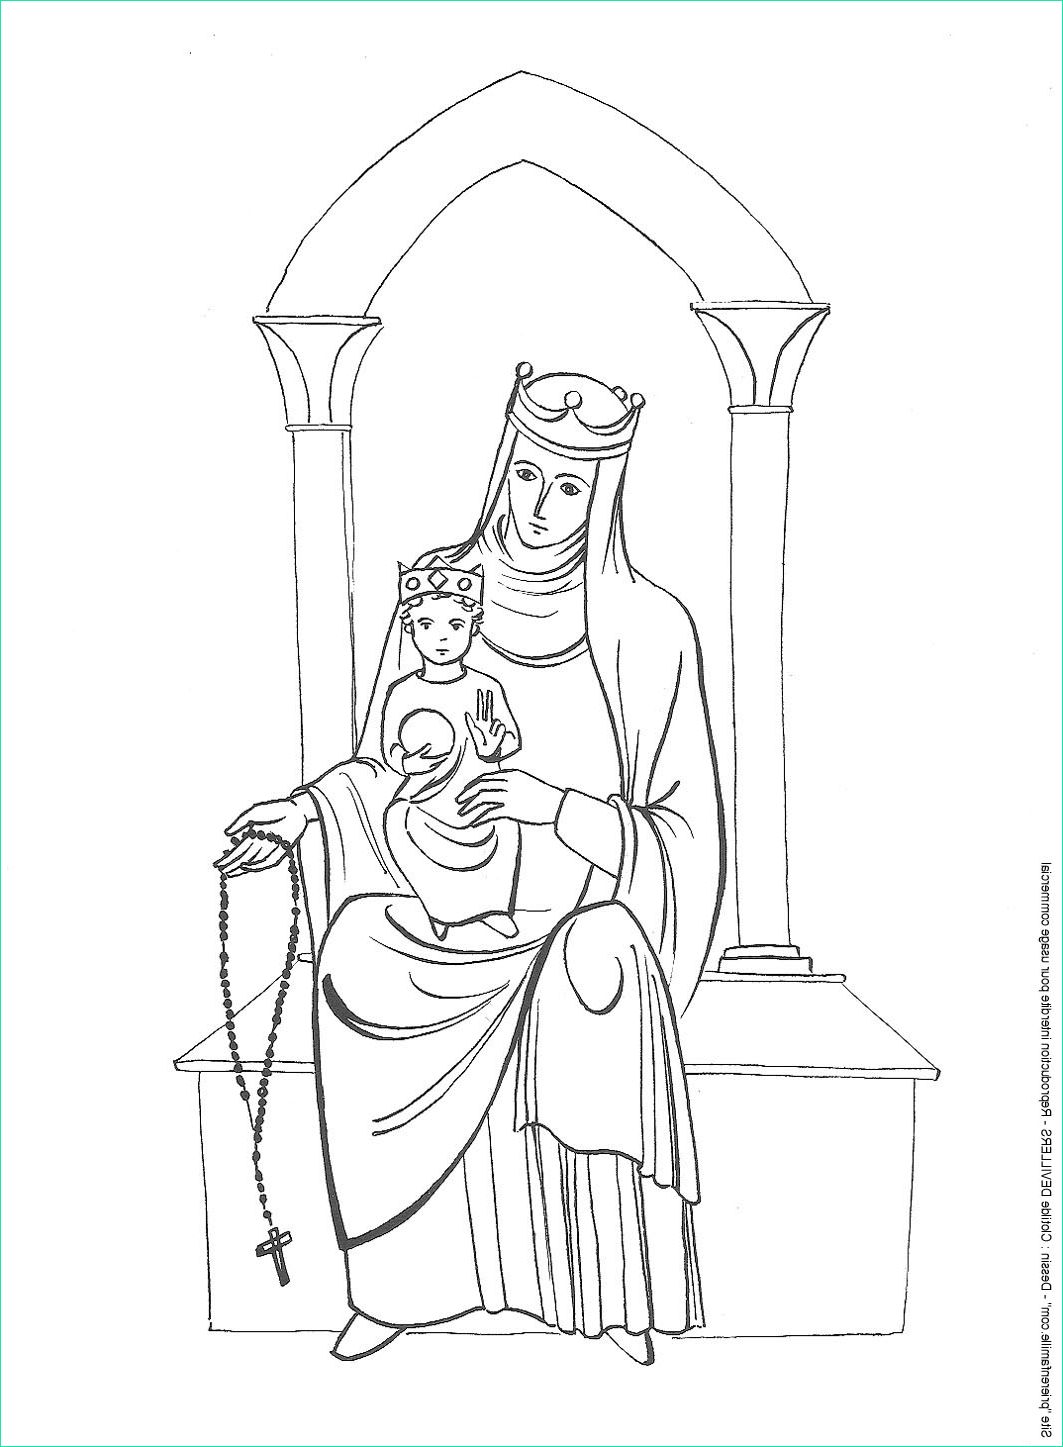 Marie Dessin Nouveau Images 51 – Sainte Marie MÈre De Dieu 1er Dessin – Prierenfamille